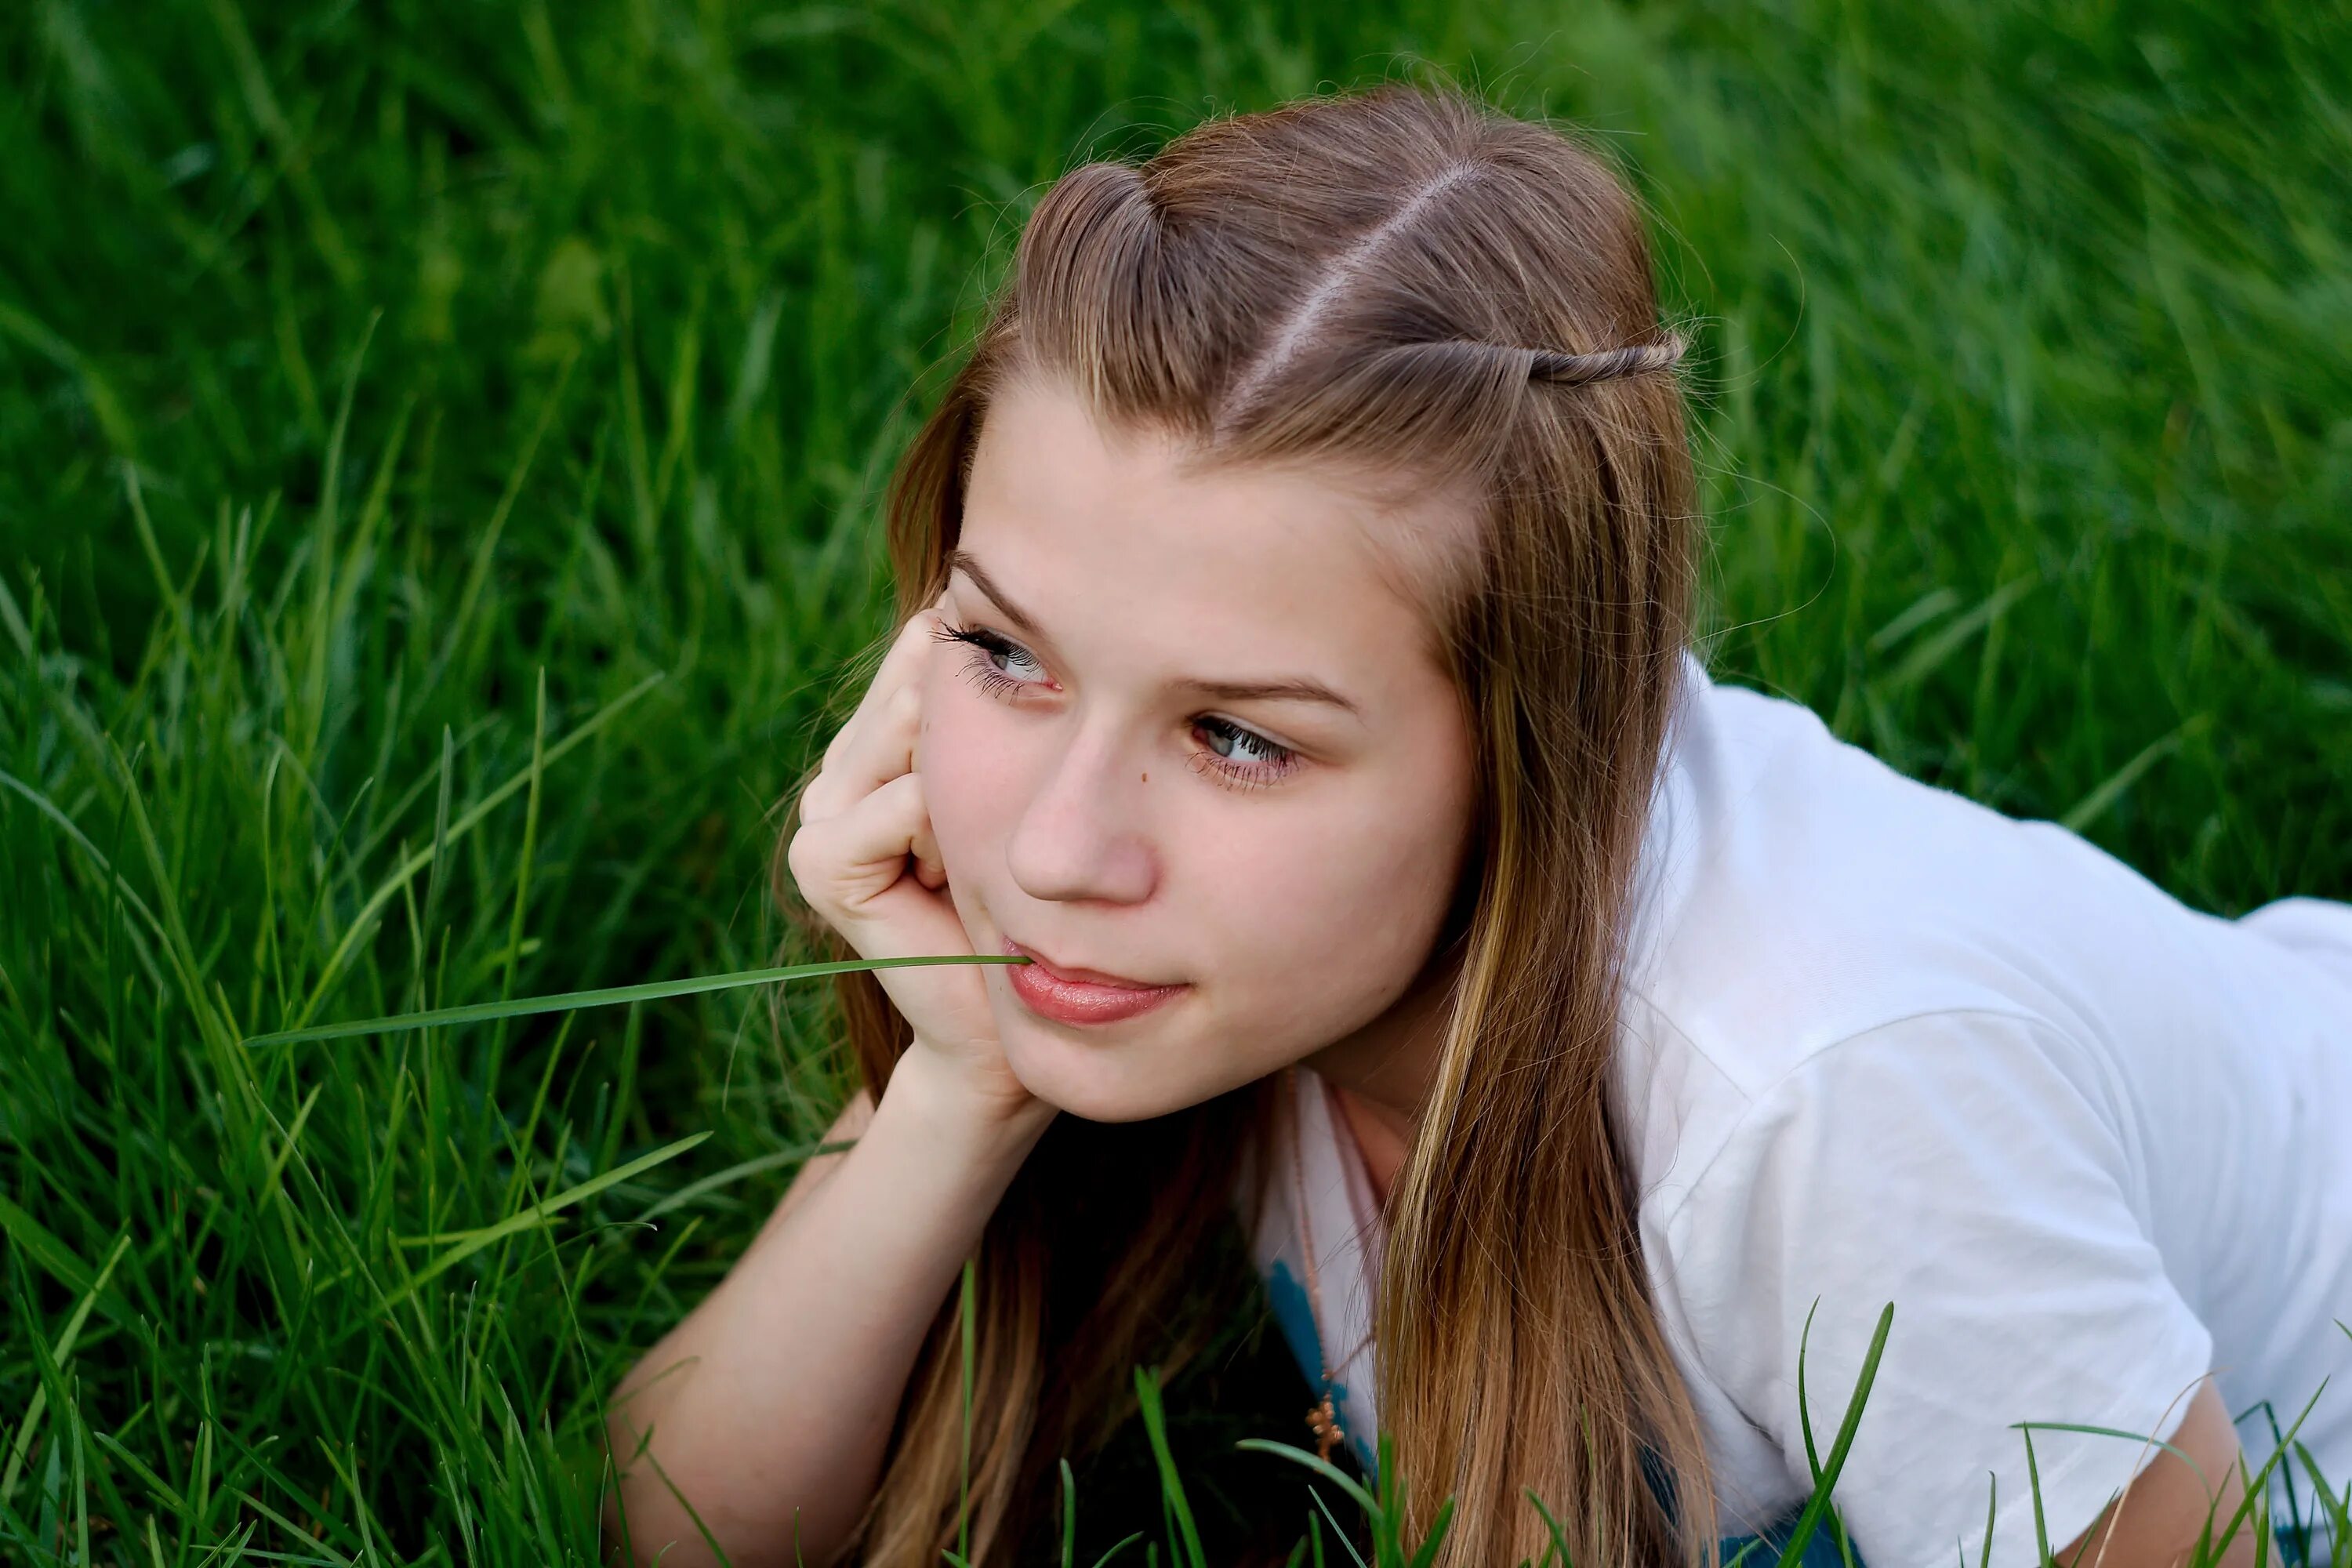 Young french. Портрет. Человек девушка. Десятилетняя девочка на траве. Фото людей девушек.